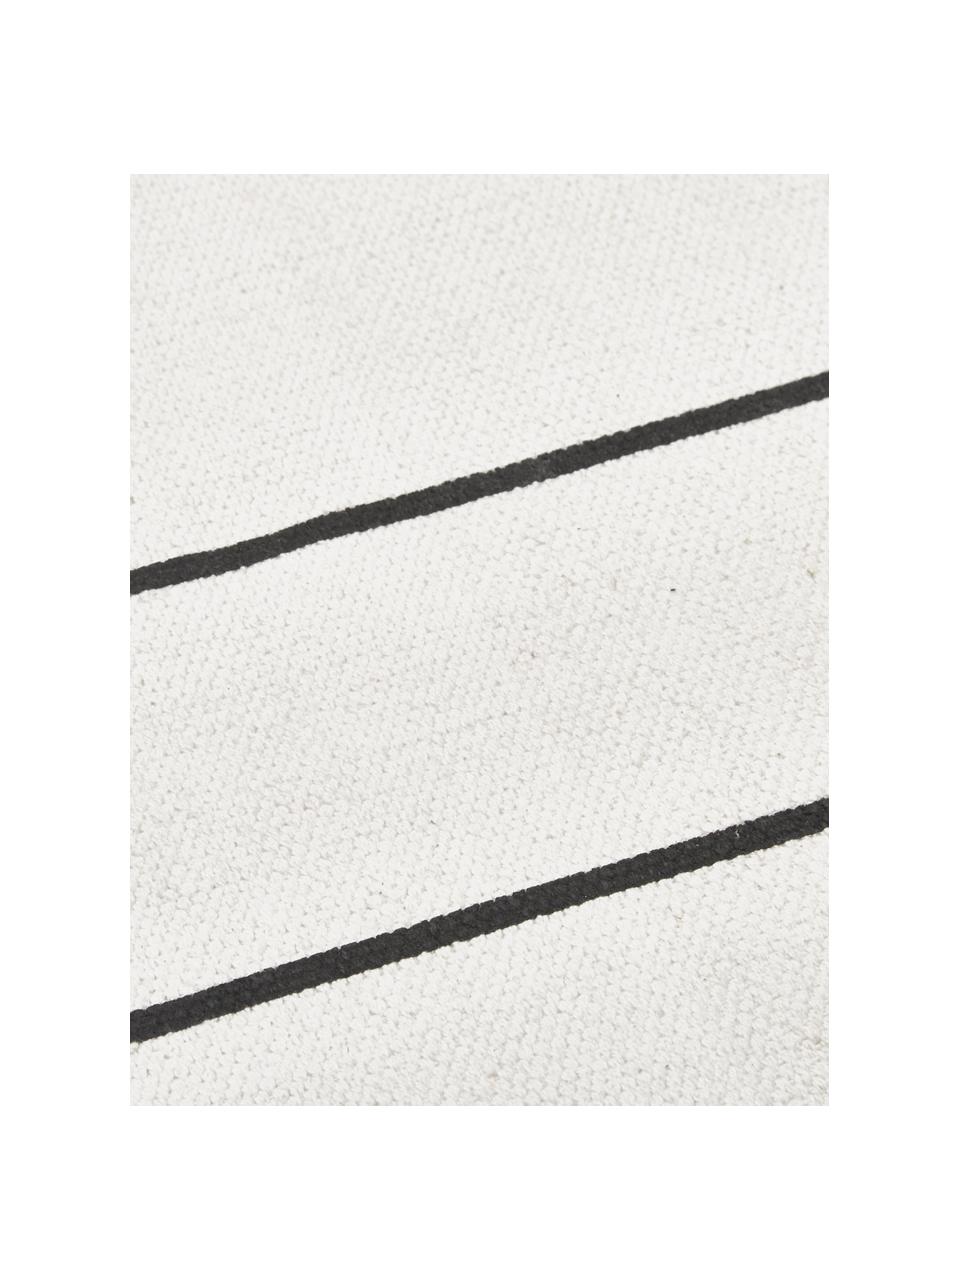 Flachgewebter Baumwollteppich David mit Linien, handgefertigt, 100% Baumwolle, Cremeweiss, Schwarz, B 200 x L 300 cm (Grösse L)